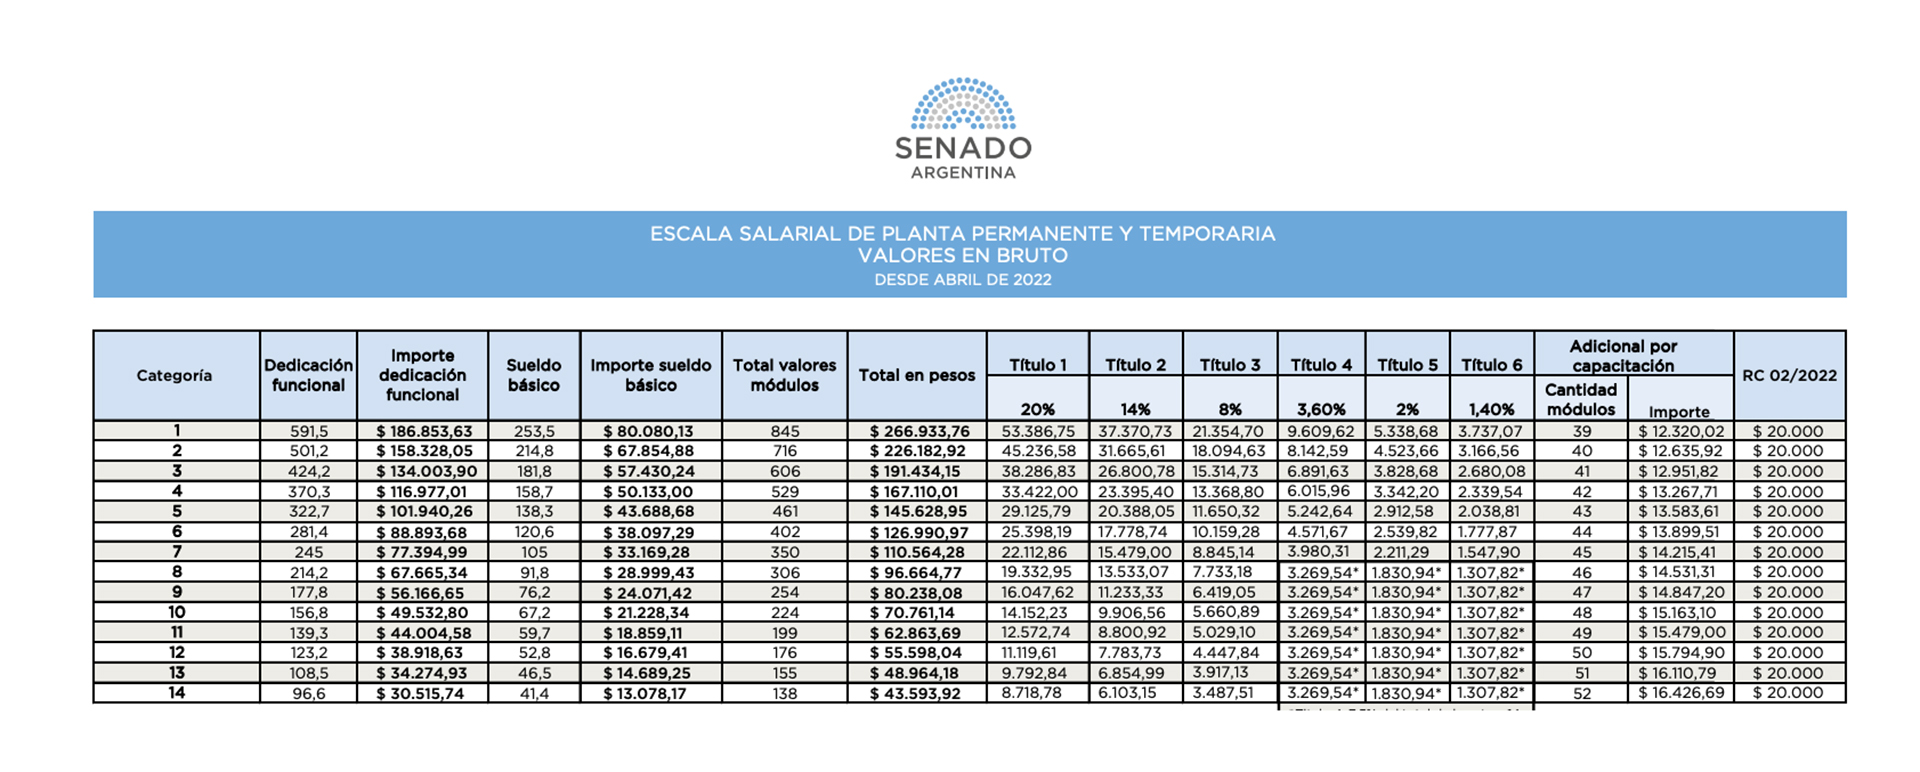 Escala salarial del personal de planta permanente y transitoria publicada en la web del Senado